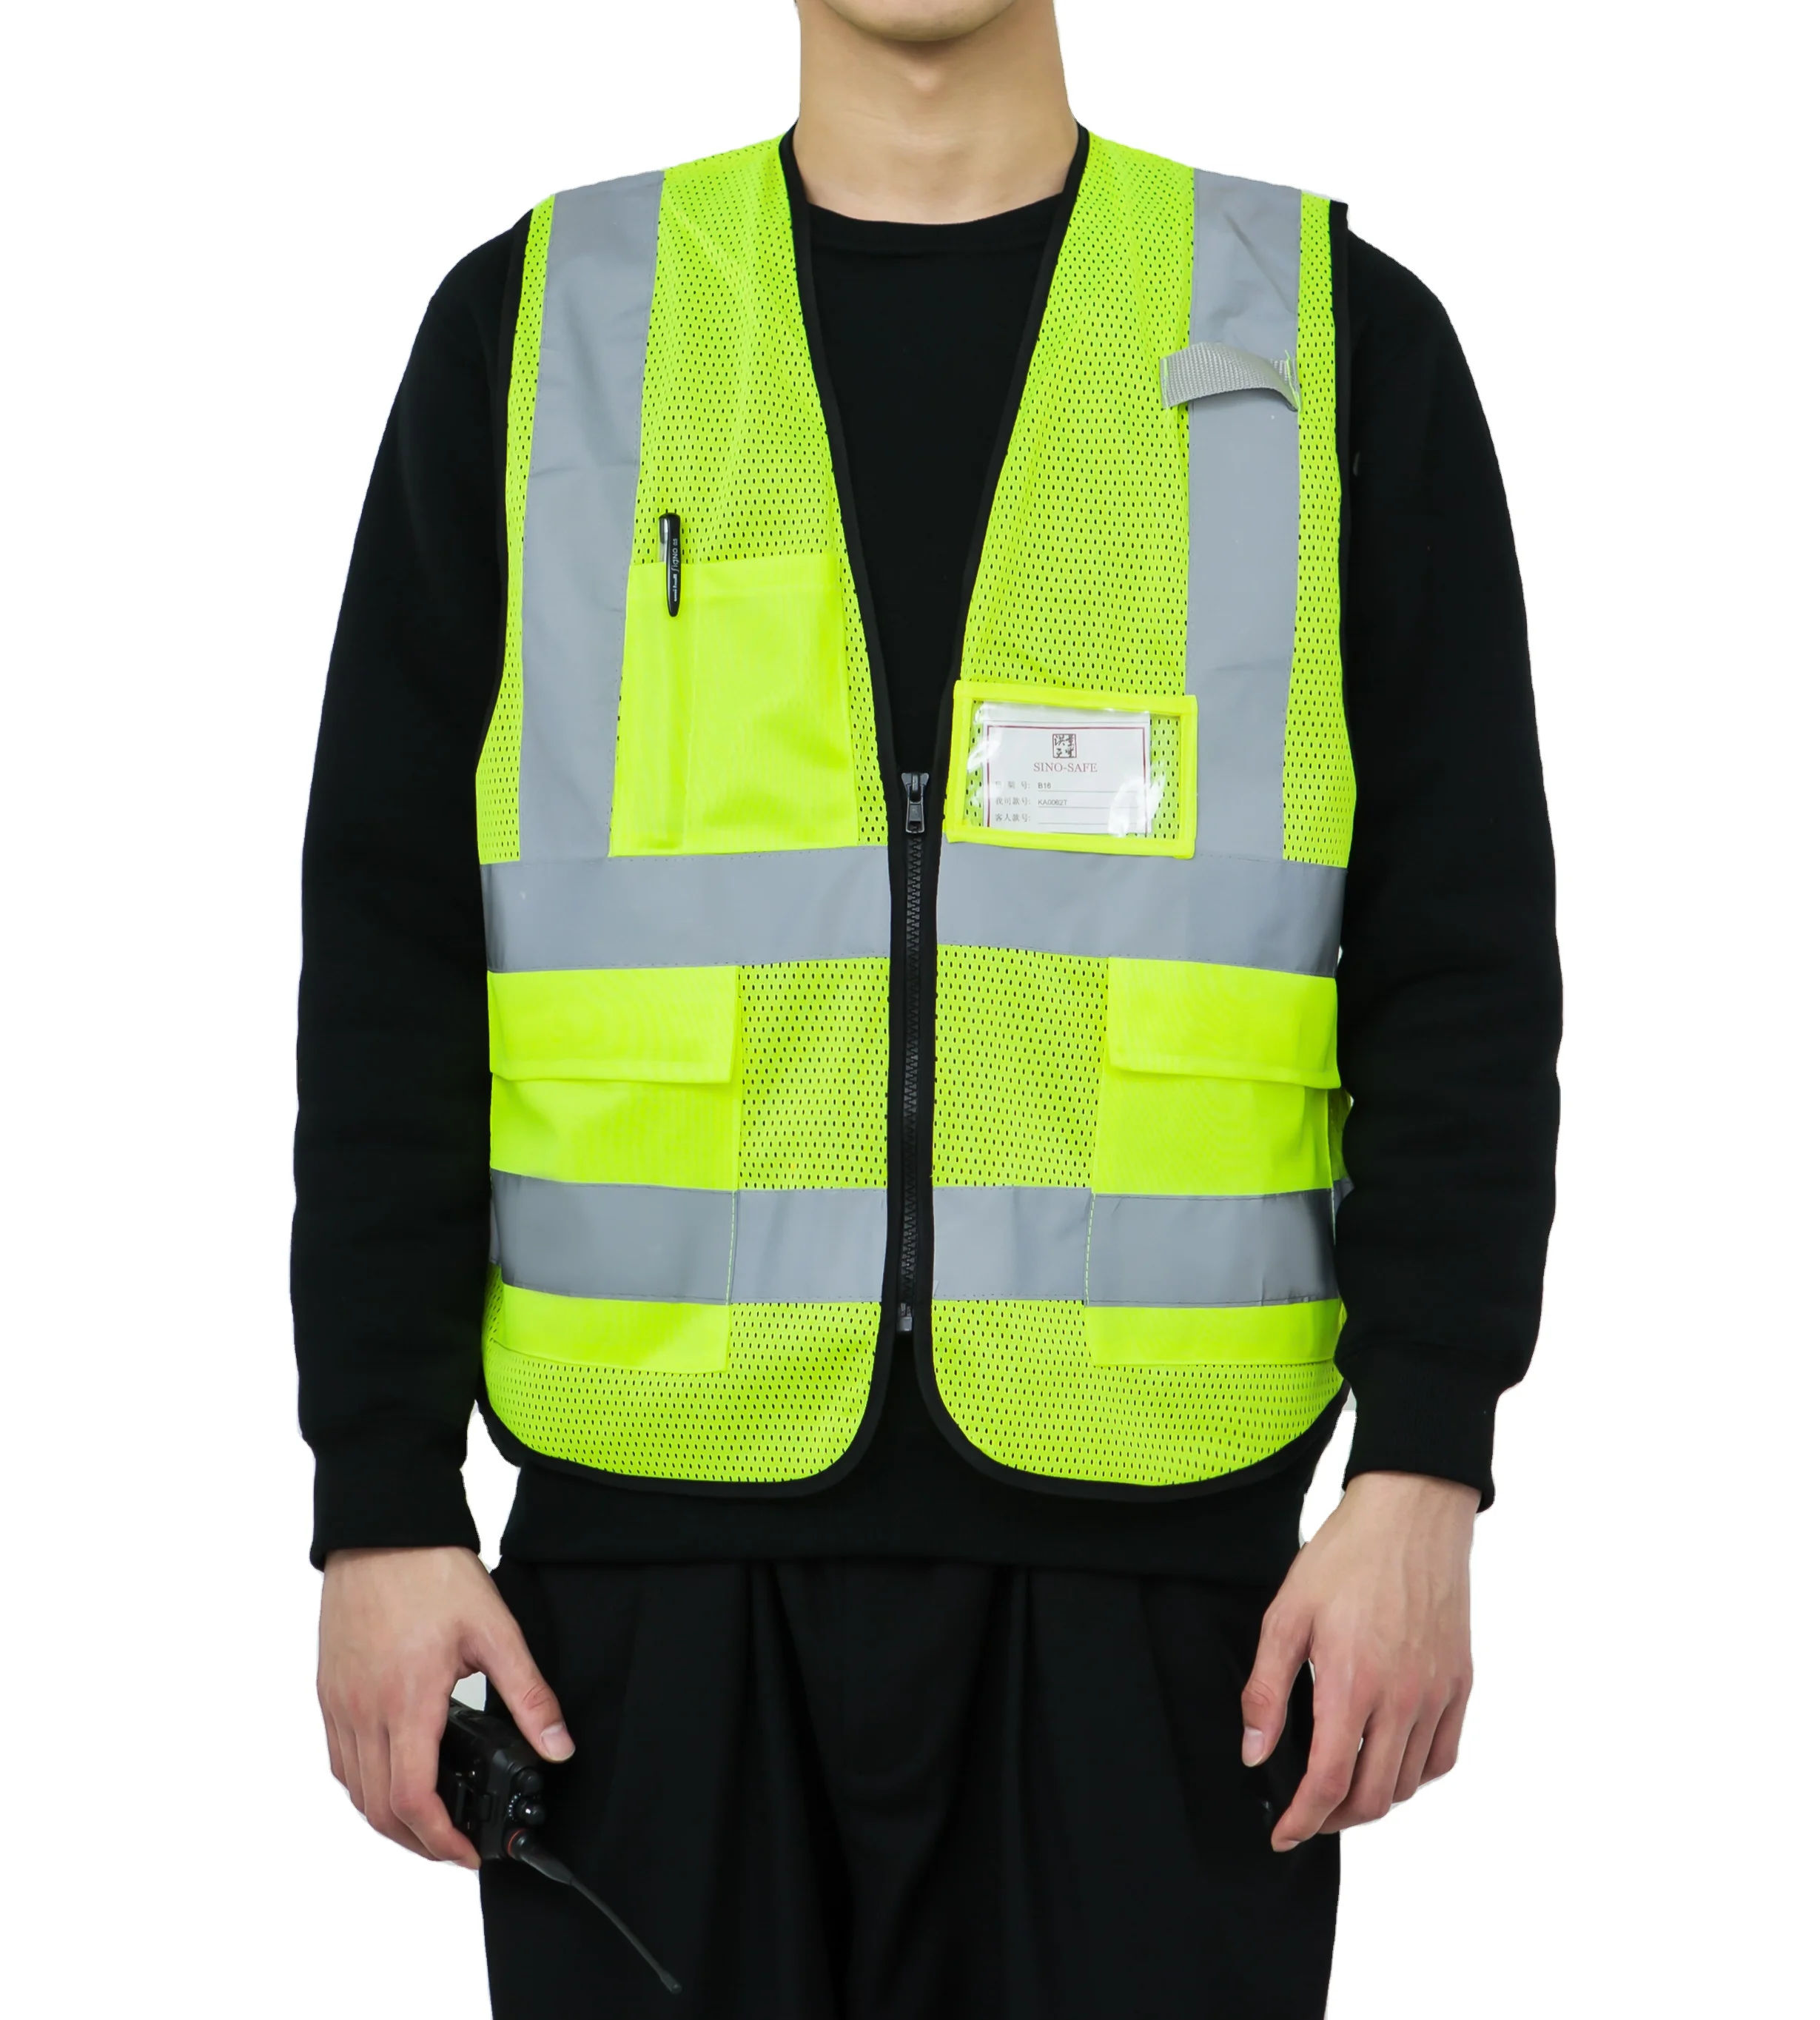 Safety Marshal Hi-Vis High Visibility Vest Coat Equestrian Safety Reflective 